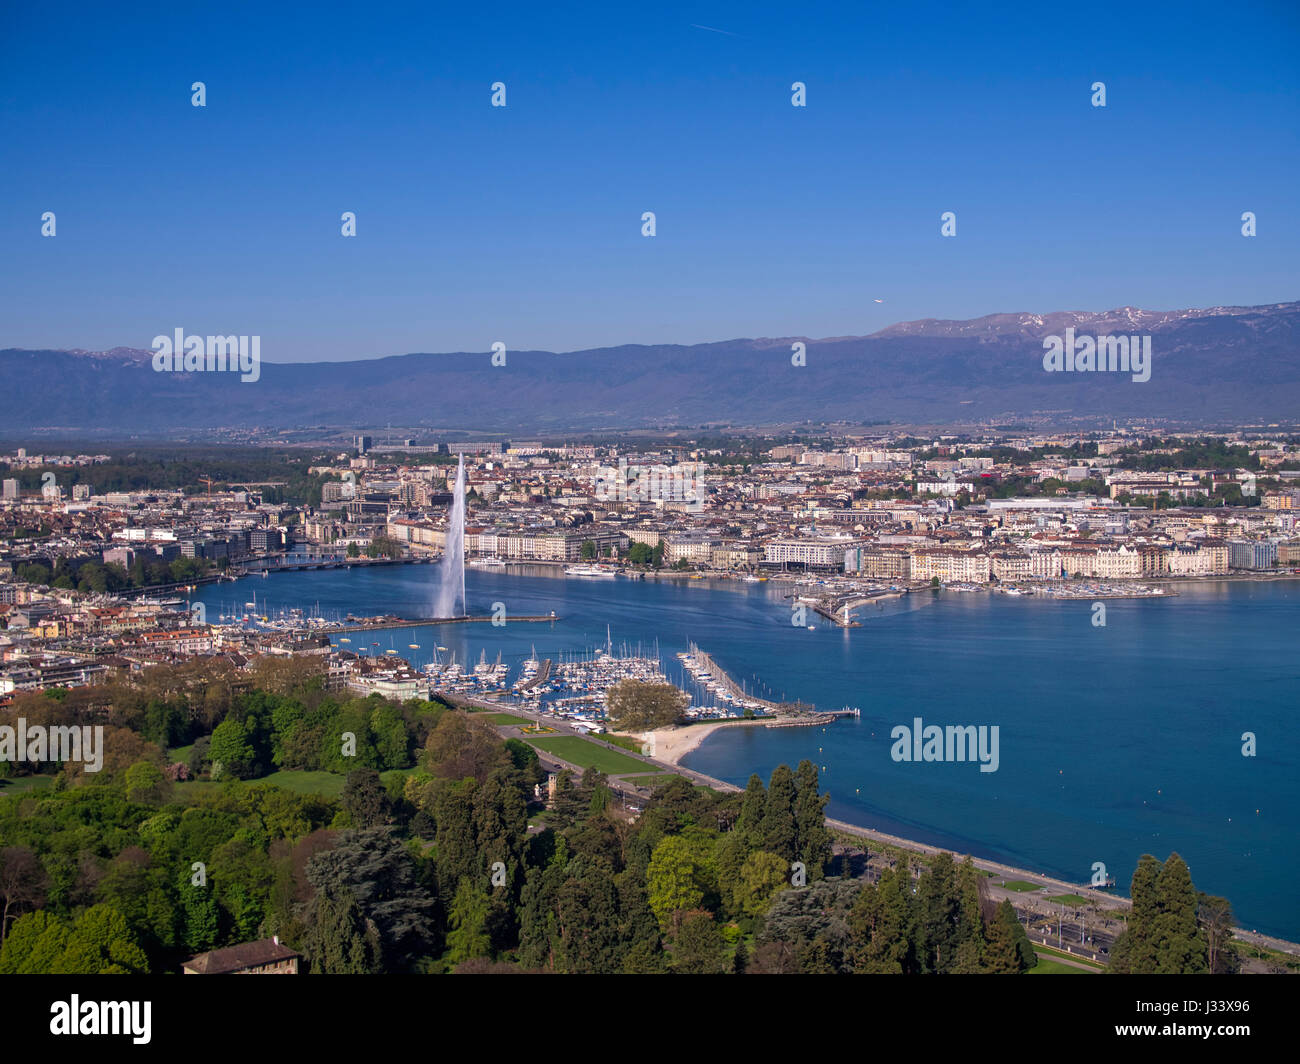 Luftbild von der Stadt Genf mit Springbrunnen Jet d ' Eau und Genfer See Stockfoto